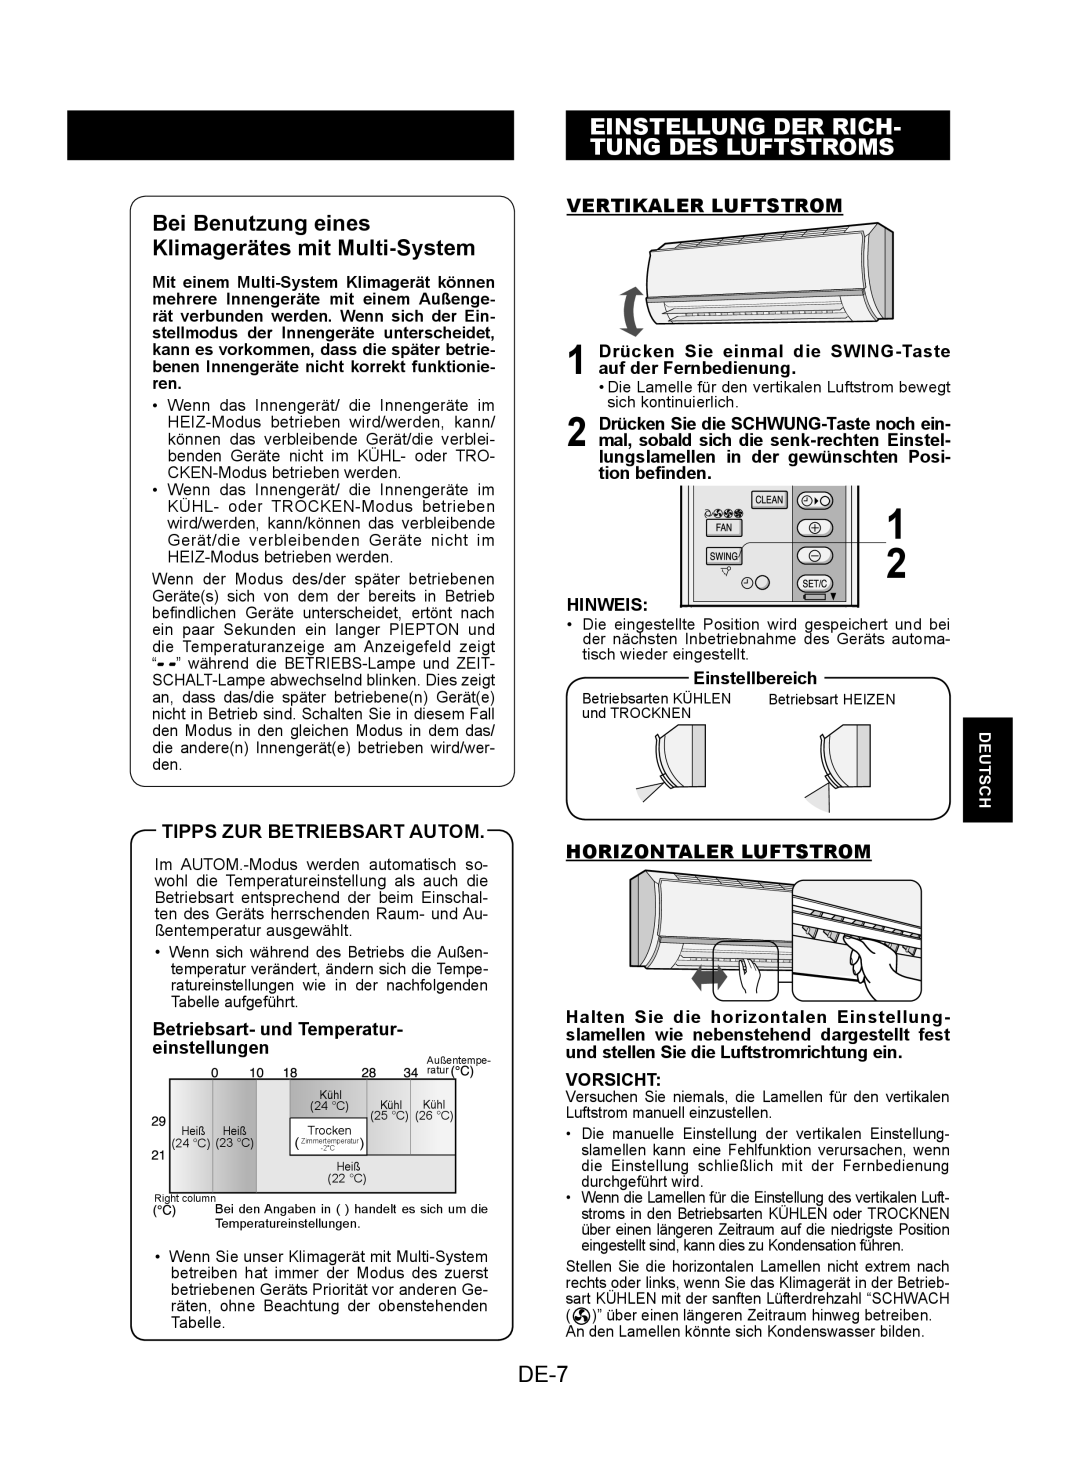 Sharp AY-XPC7JR Bei Benutzung eines Klimagerätes mit Multi-System, Einstellung Der Rich Tung Des Luftstroms, DE-7, Hinweis 